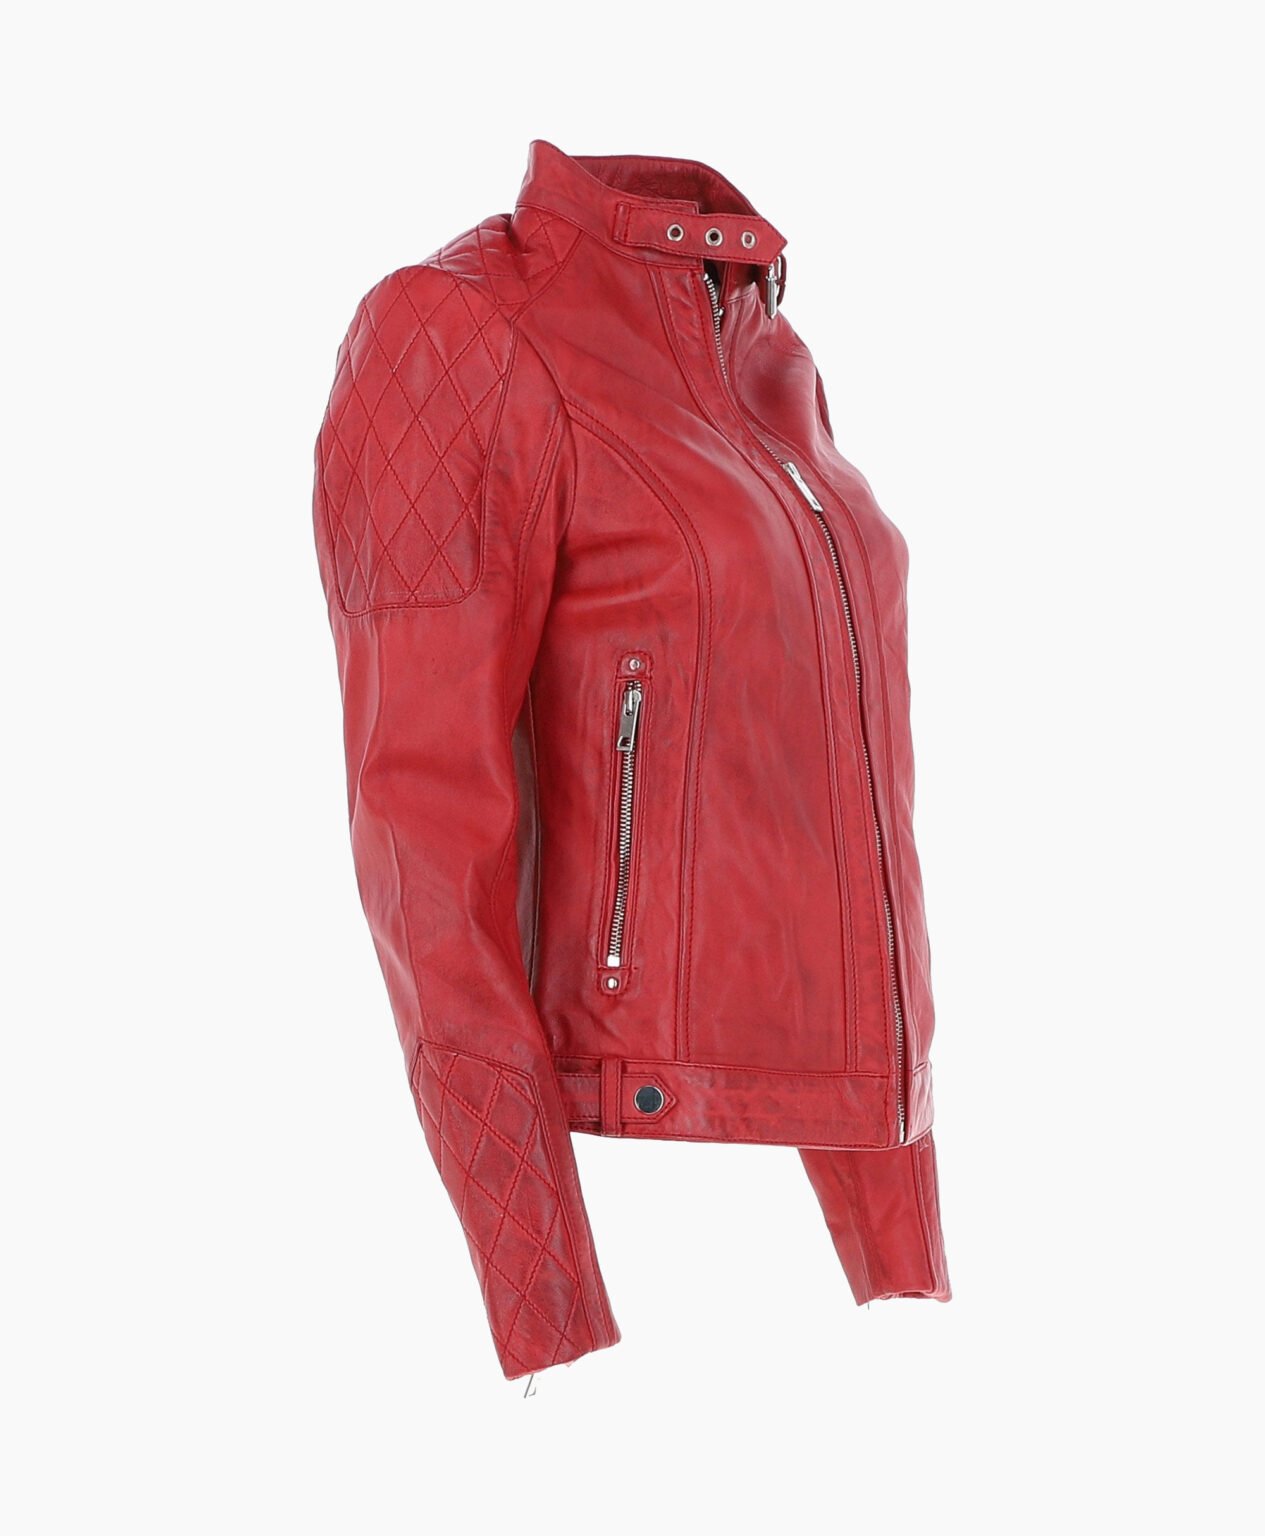 vogue-jacket-leather-jacket-red-malibu-image203